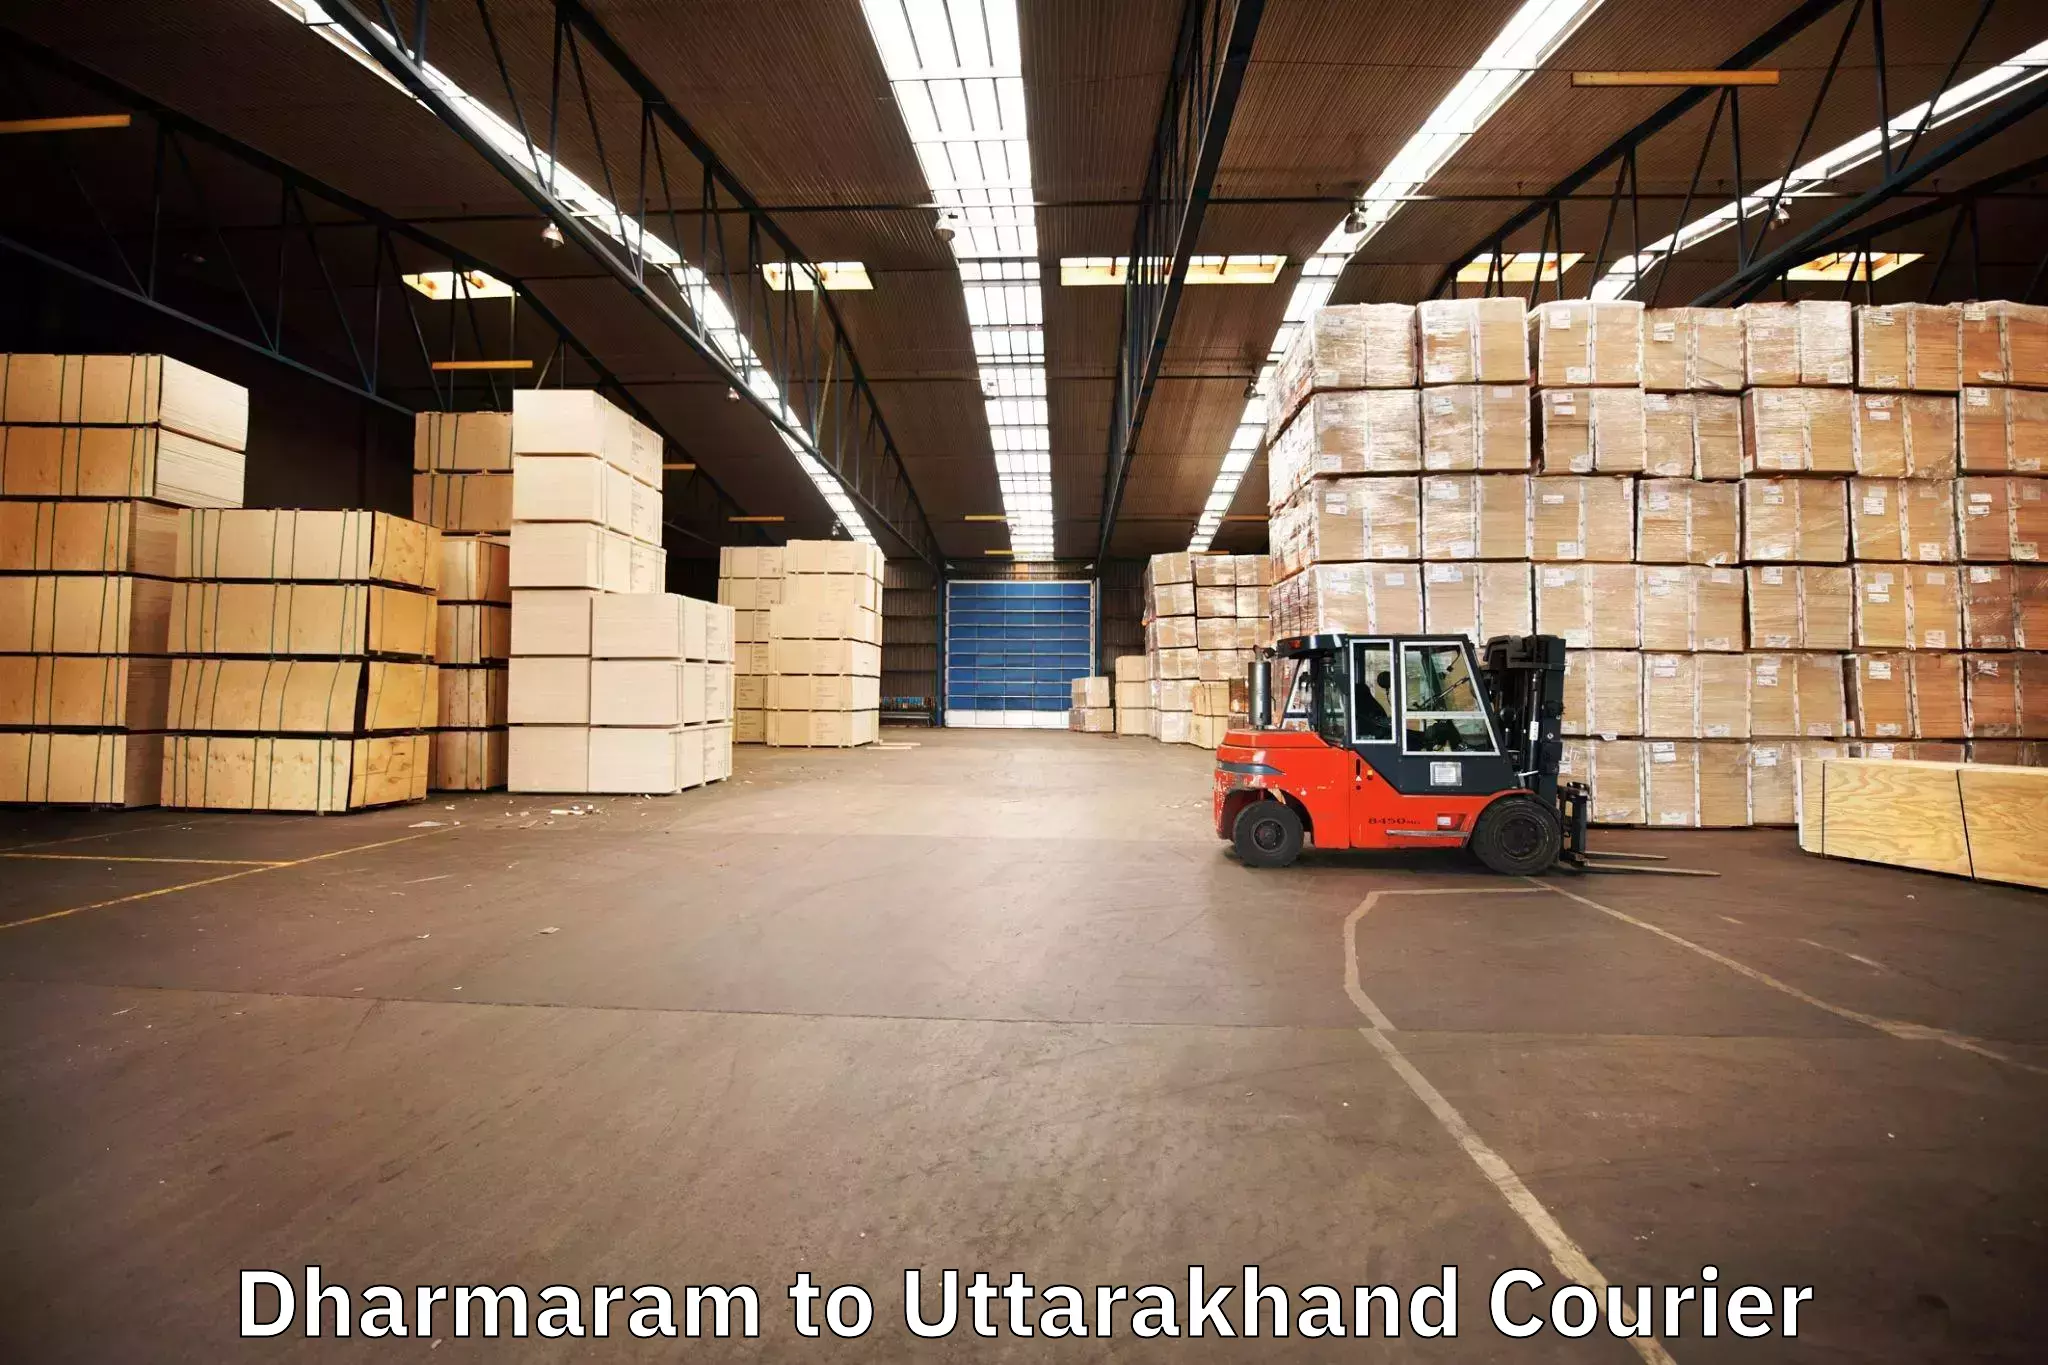 Furniture delivery service Dharmaram to Kotdwara